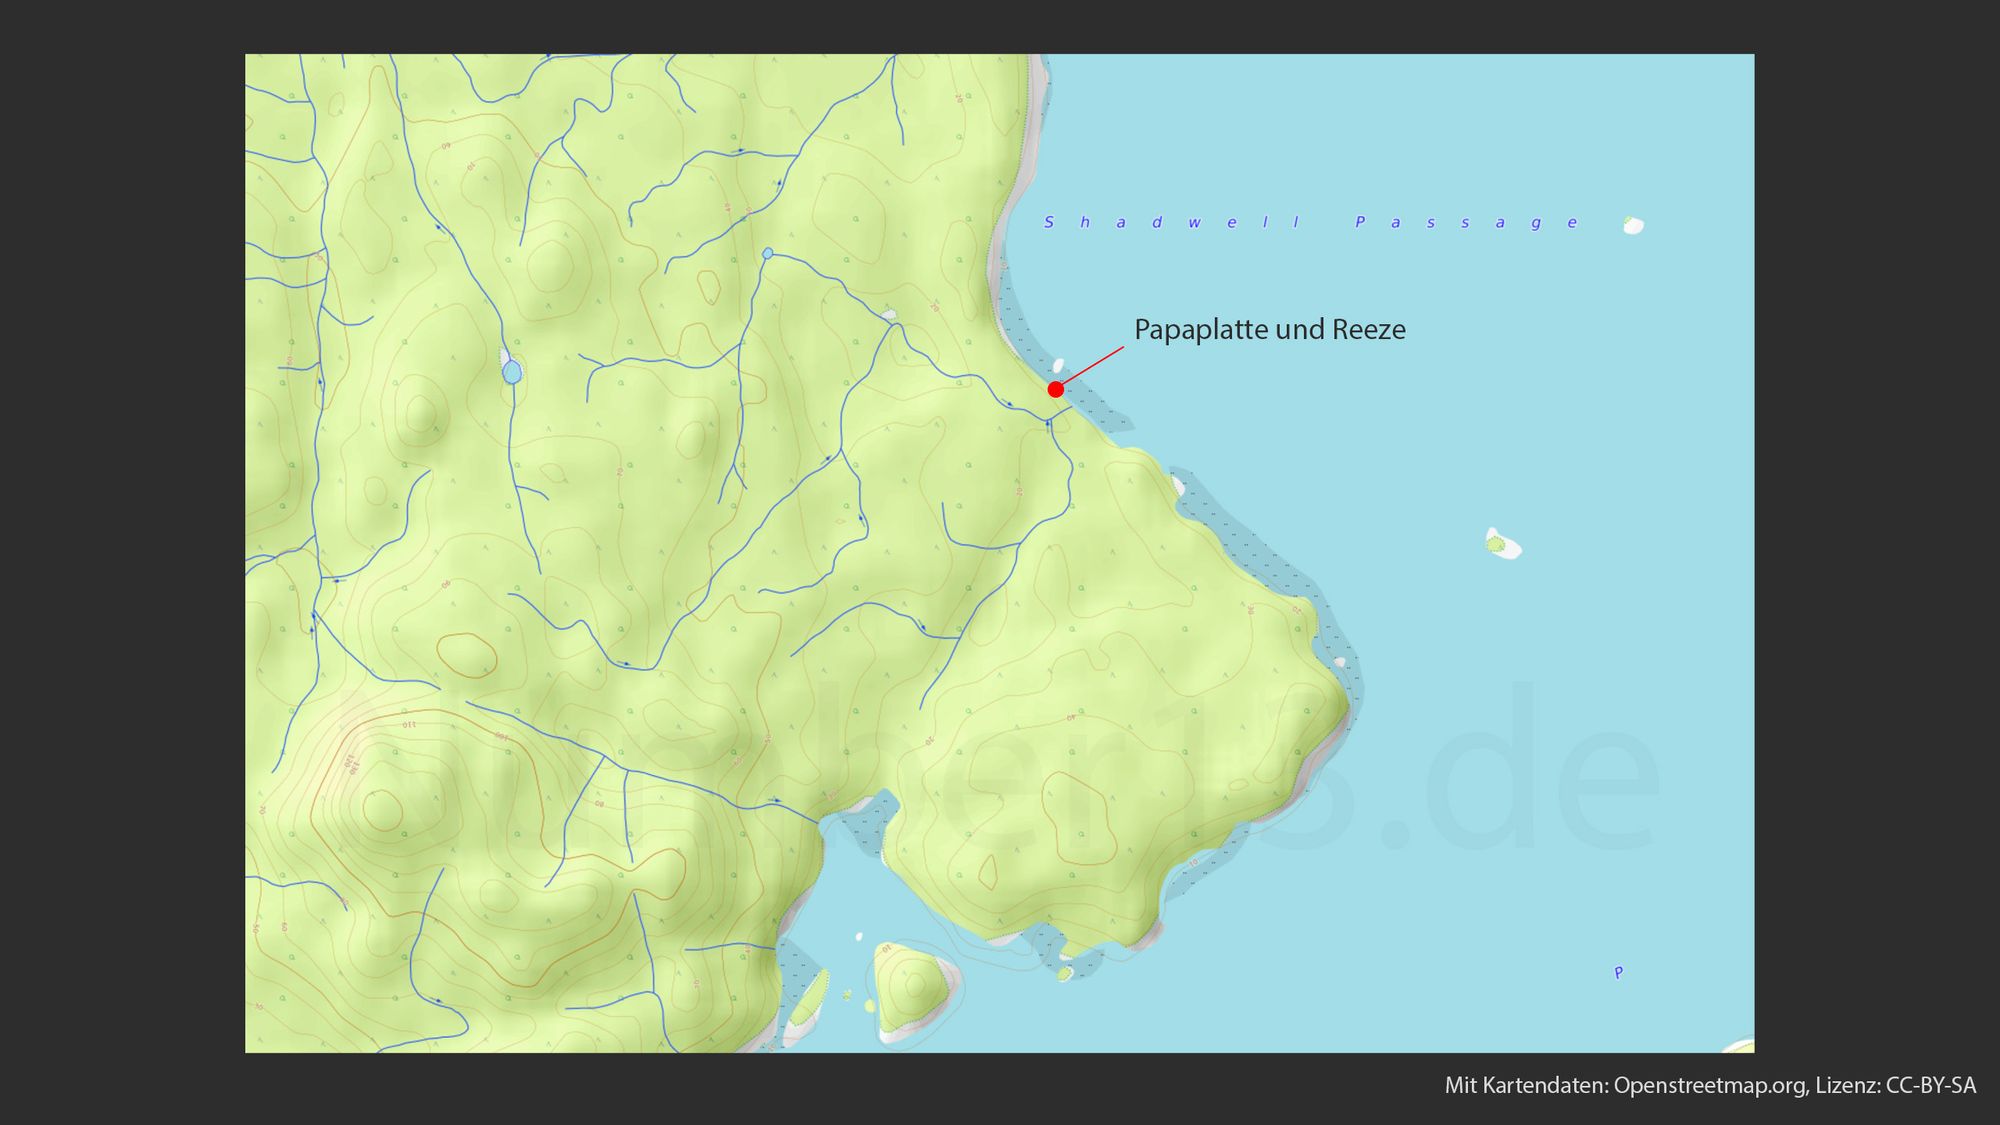 Topografische Karte, die eine hügelige Landschaft mit konzentrischen Höhenlinien zeigt. Ein roter Punkt, markiert mit einem Pfeil, befindet sich nahe der Küstenlinie, begleitet von der Beschriftung "Papaplatte und Reeeze". Blaue Linien schlängeln sich durch die Landschaft, was auf Wasserwege hindeutet. Die Karte enthält die Angabe "Mit Kartendaten: Openstreetmap.org, Lizenz: CC-BY-SA"